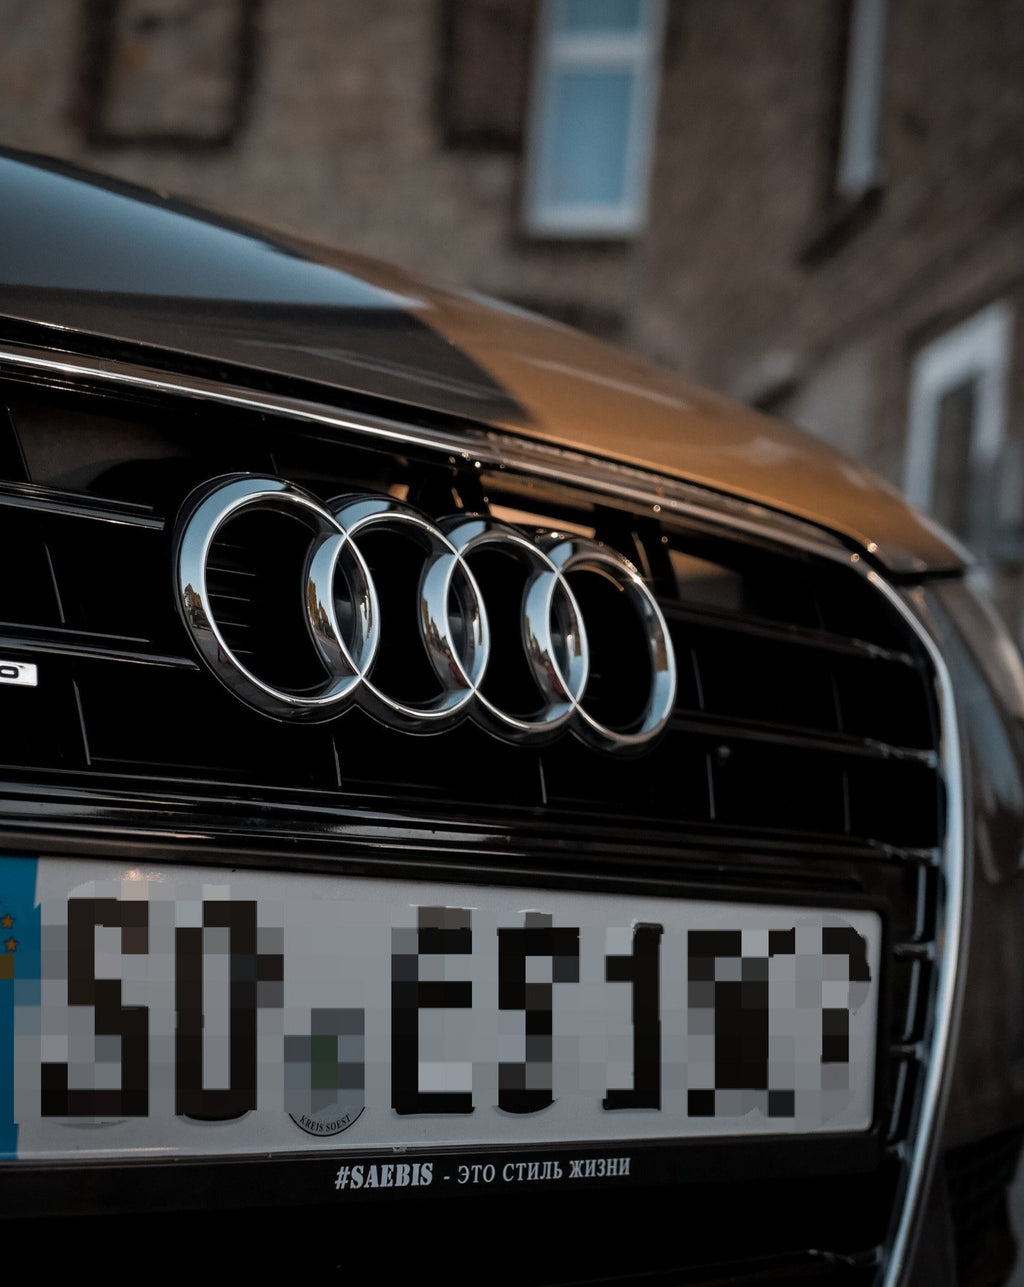 2 x Audi Kennzeichenhalter Kostenloser Versand in Brandenburg